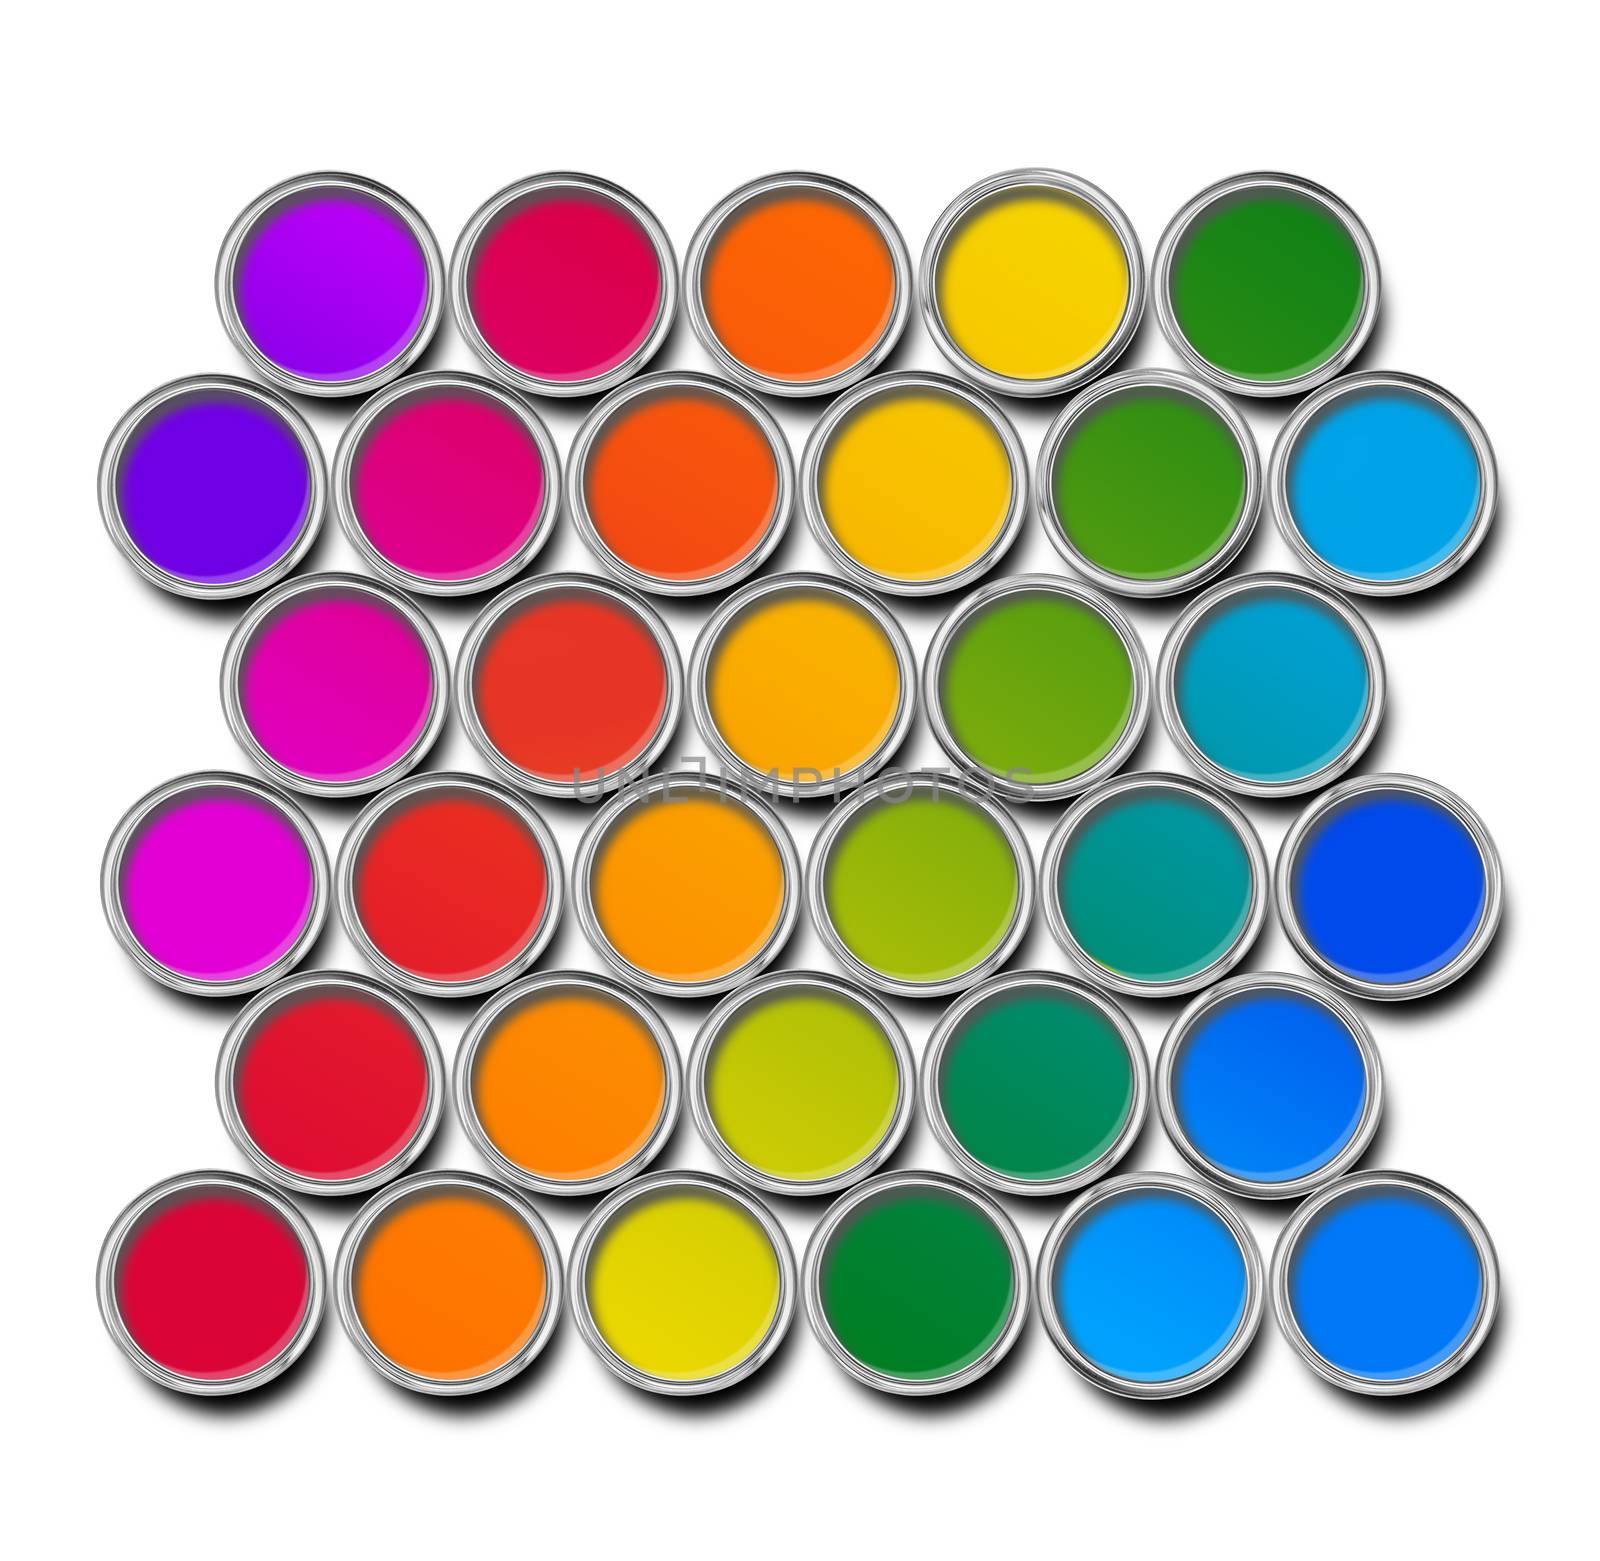 Paint cans color spectrum by anterovium